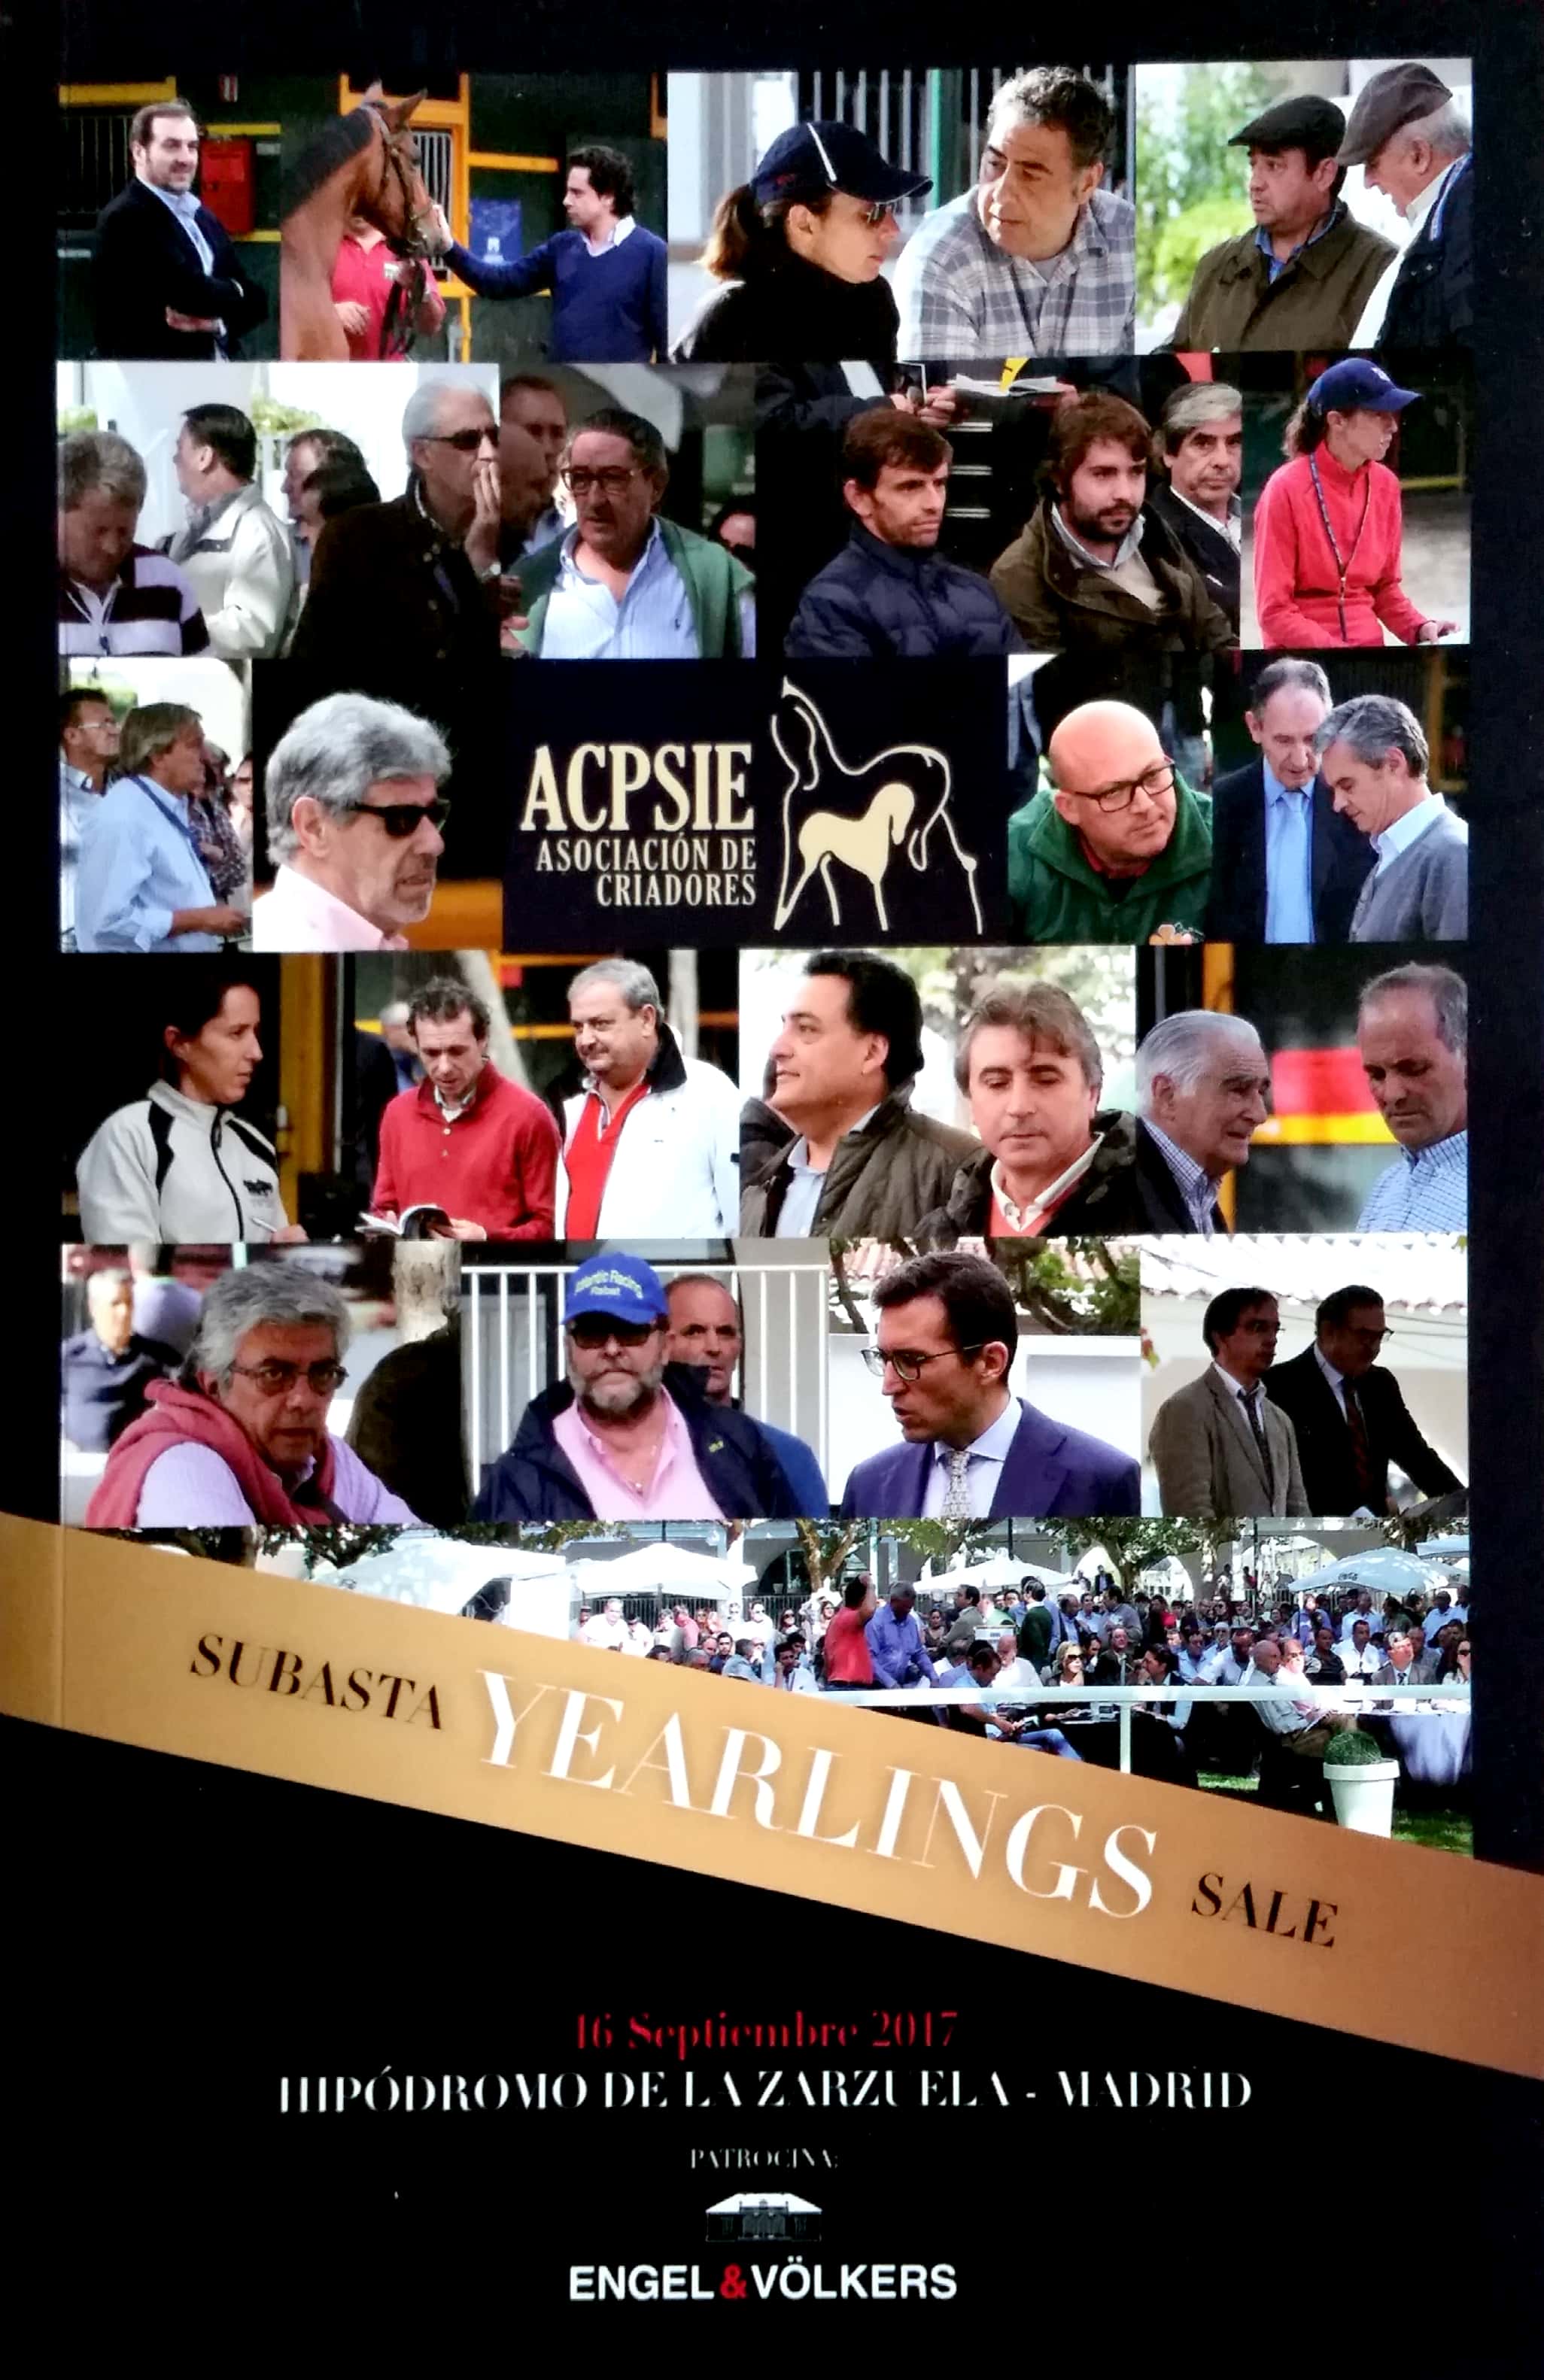 Catálogo subasta yearlings ACPSIE 2016